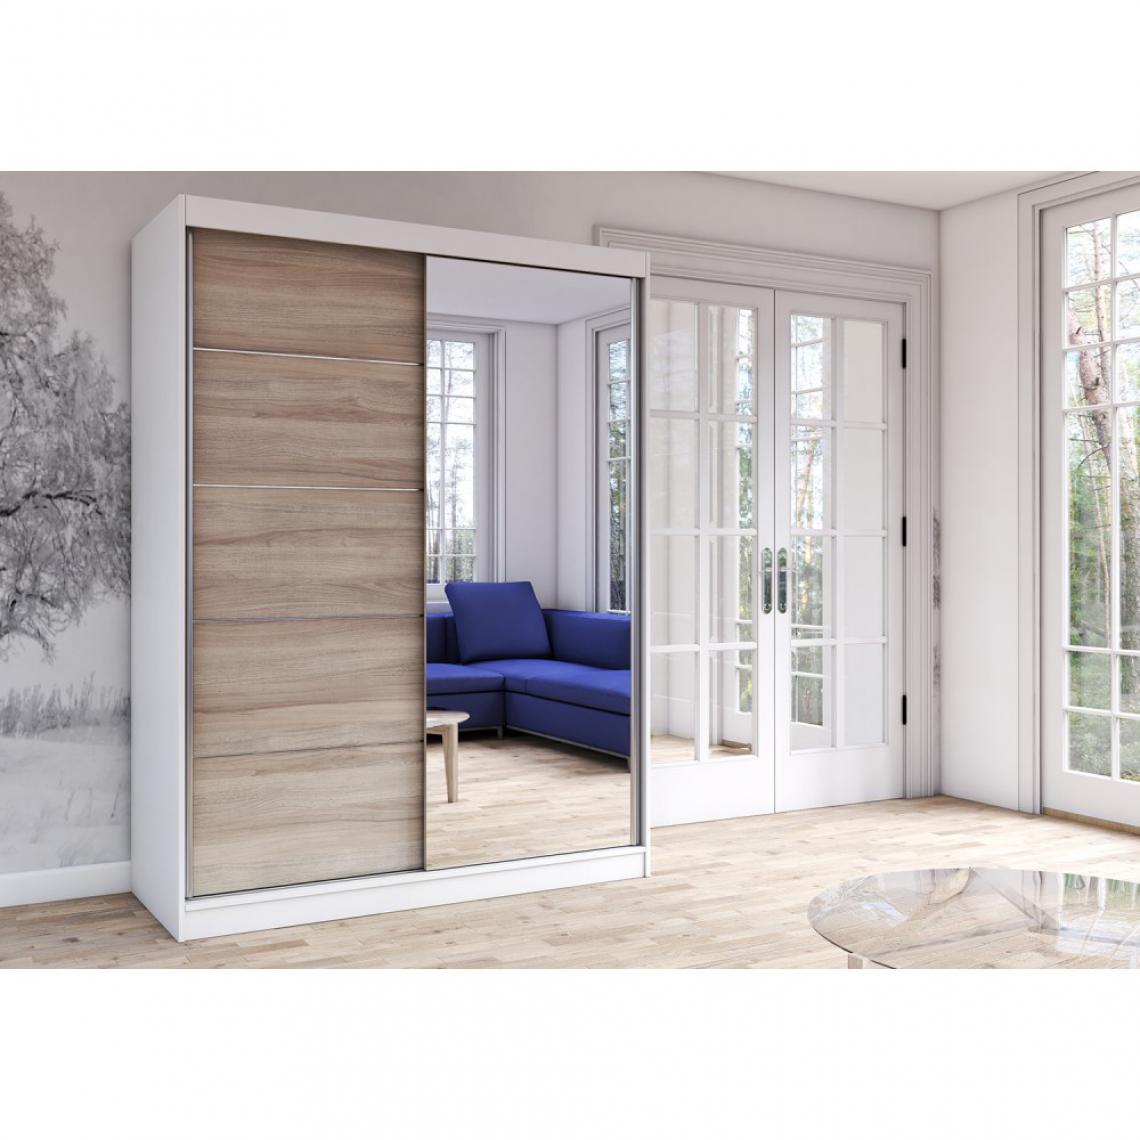 Hucoco - KALKE - Grande armoire à portes coulissantes - Miroir - 5 étagères + tringle - 218x183x61 cm - Blanc - Armoire